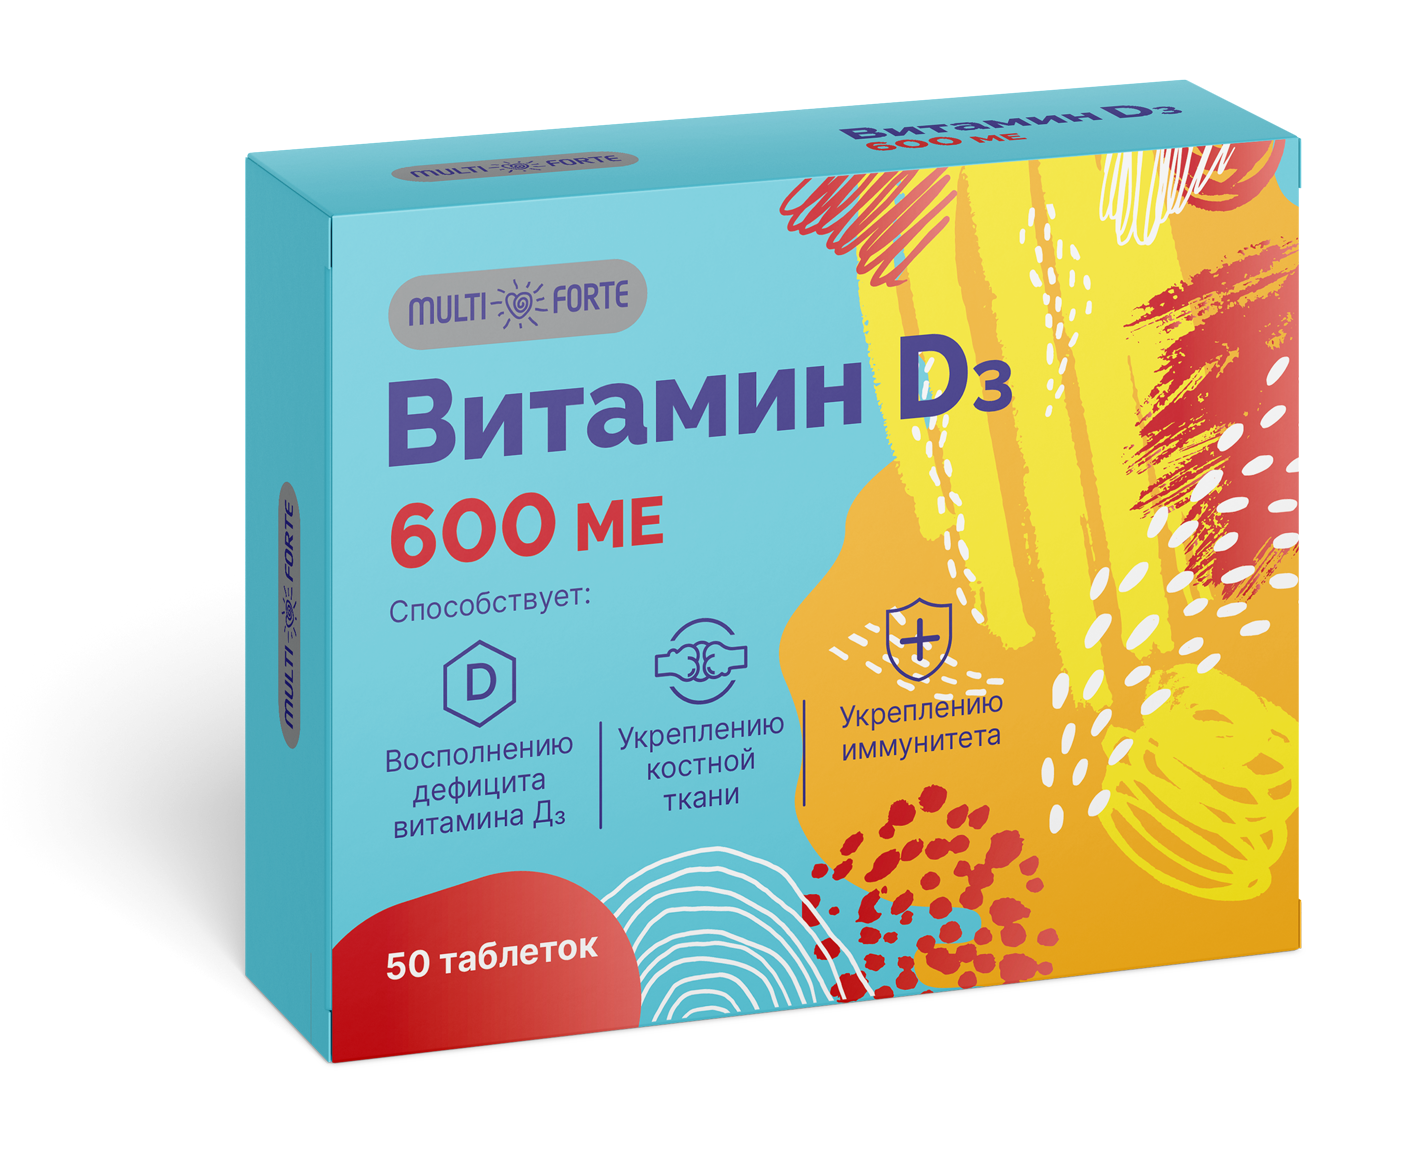 Витамин D3 MultiForte, таблетки 600 МЕ, 50 шт.